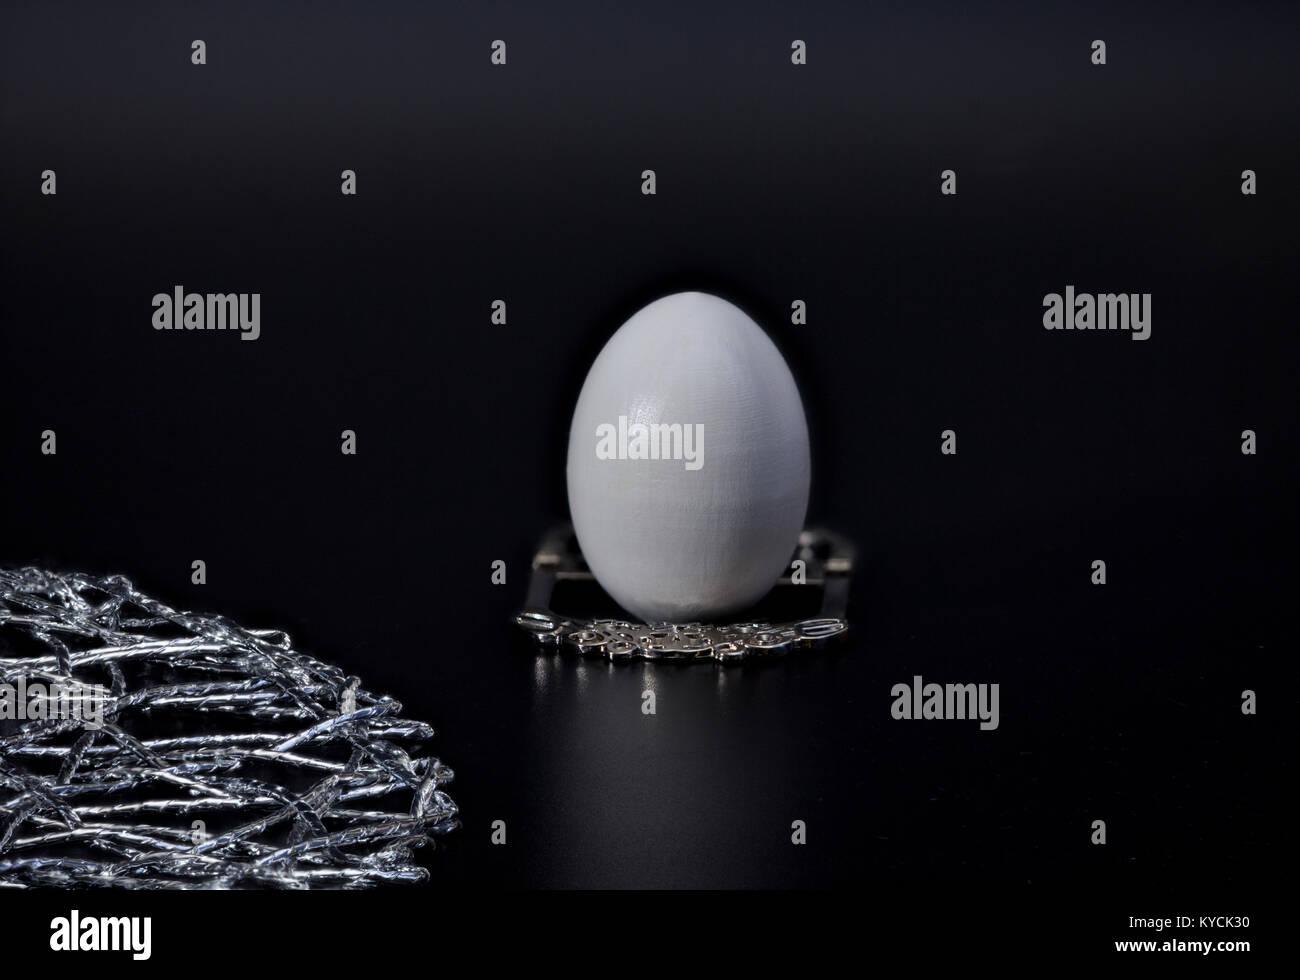 Ei auf einem silbernen stehen bescheidene Frühstück, schwarzer Hintergrund Konzept Luxus, Diät, Enthaltsamkeit Stockfoto